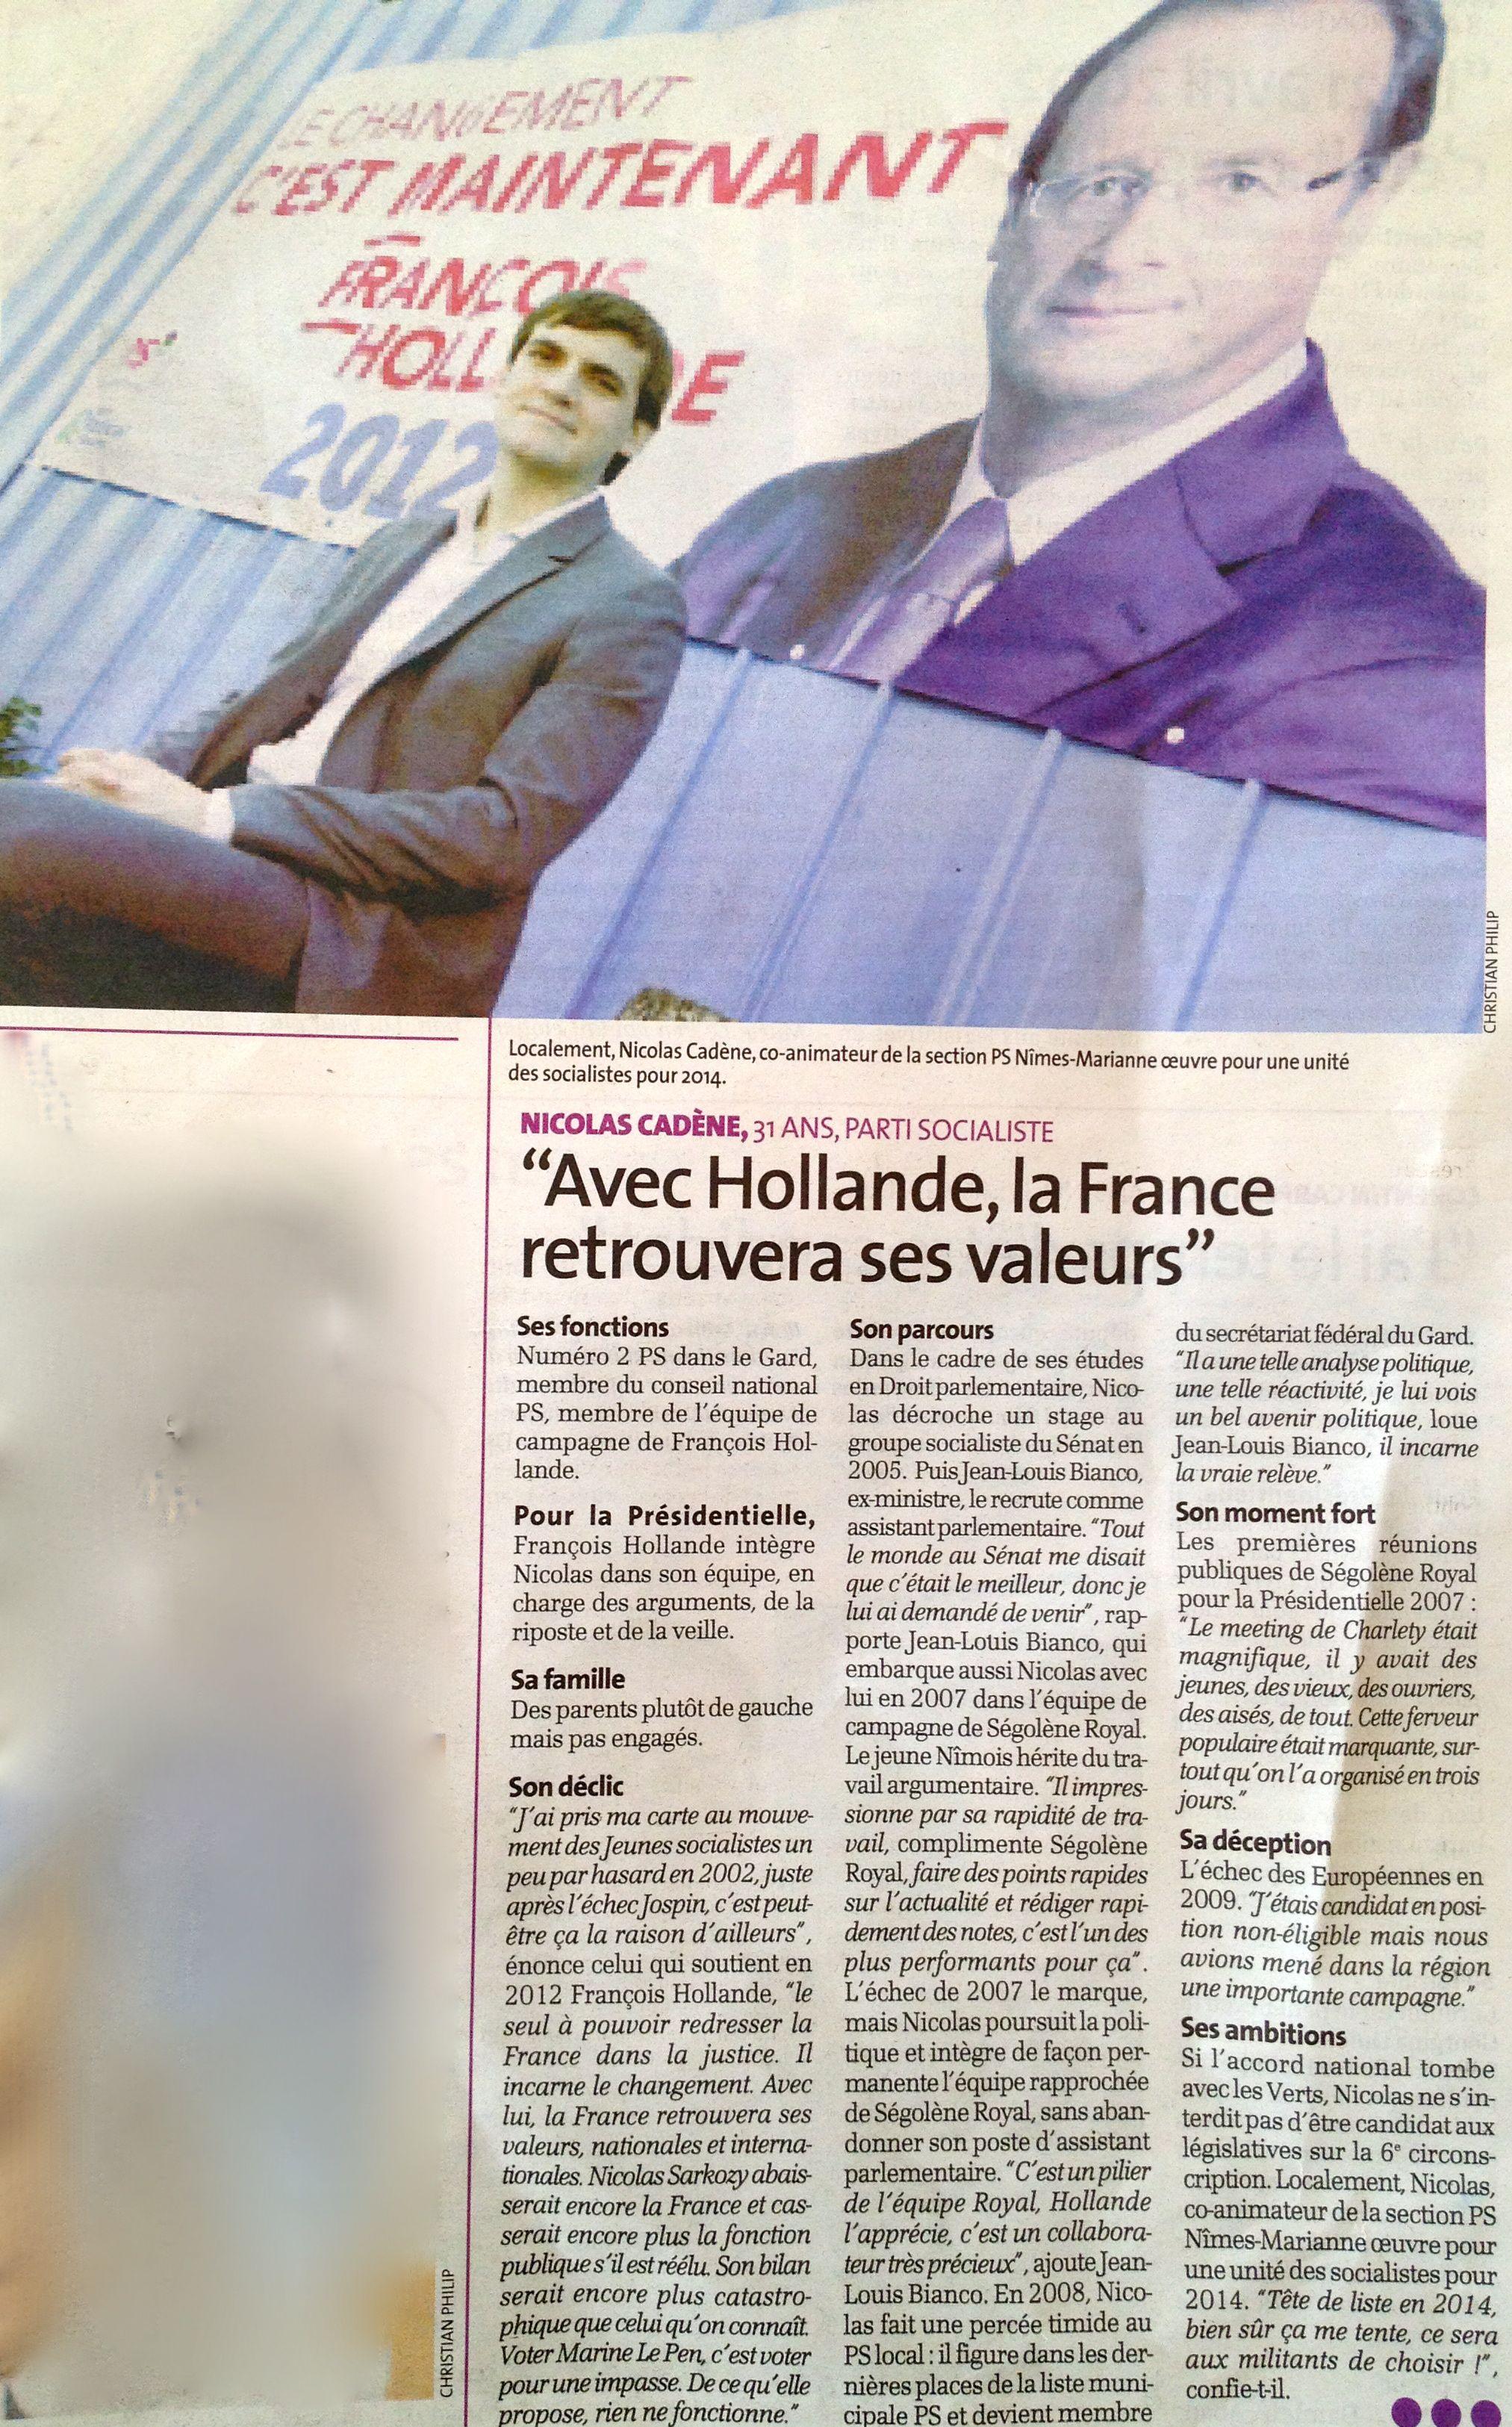 « Avec Hollande, la France retrouvera ses valeurs »